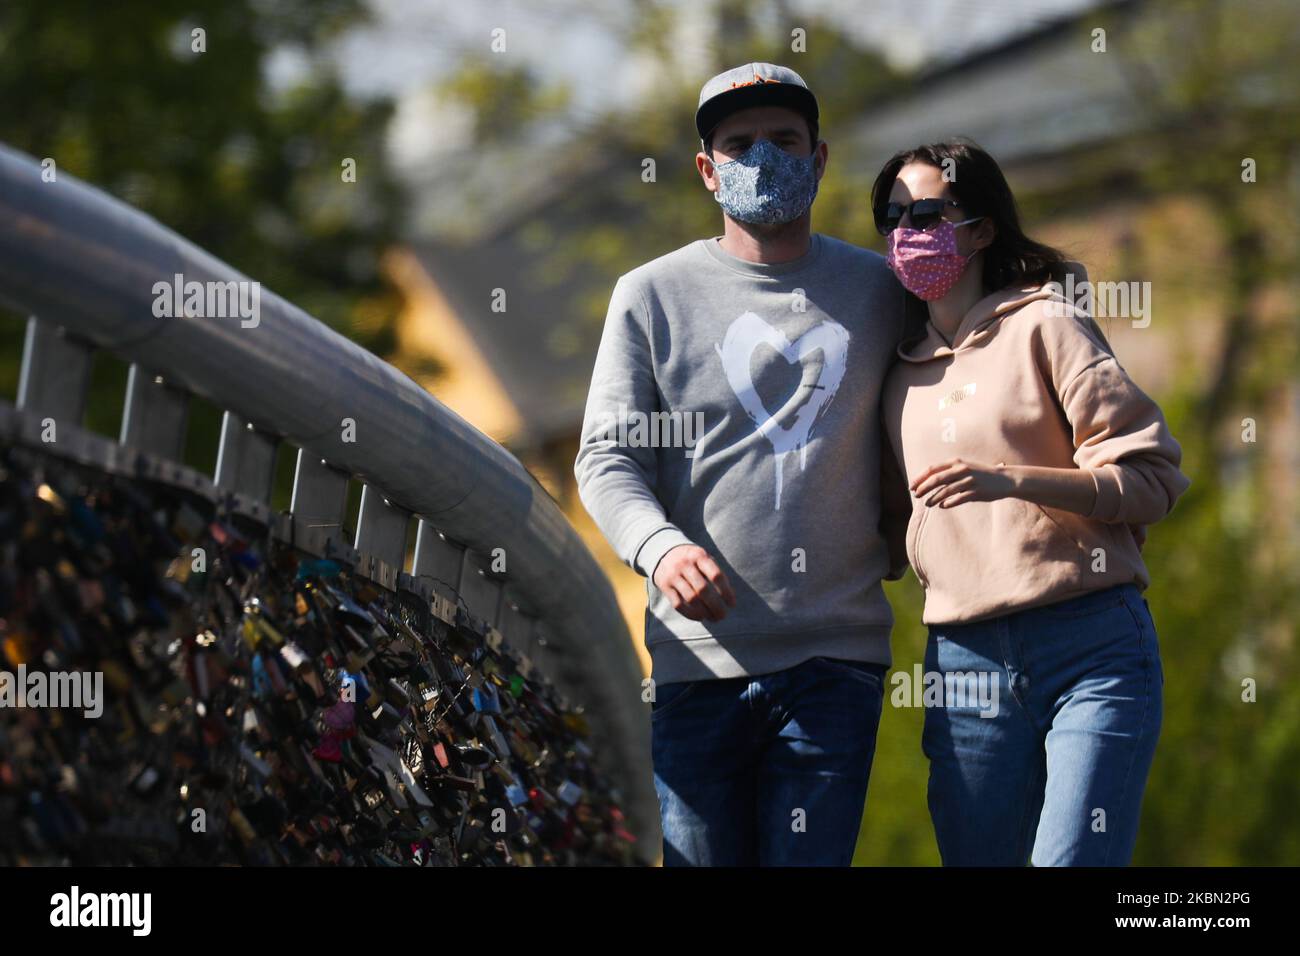 Una coppia indossa una maschera protettiva a causa della diffusione del coronavirus. Cracovia, Polonia il 27 aprile 2020. La regola di coprire il naso e la bocca in luoghi pubblici con maschere facciali, intarsi o fazzoletti è entrata in vigore dall'aprile 16th. L'ordine non si applica ai bambini fino all'età di due anni e alle persone che non sono in grado di coprire la bocca o il naso a causa di difficoltà respiratorie. (Foto di Beata Zawrzel/NurPhoto) Foto Stock